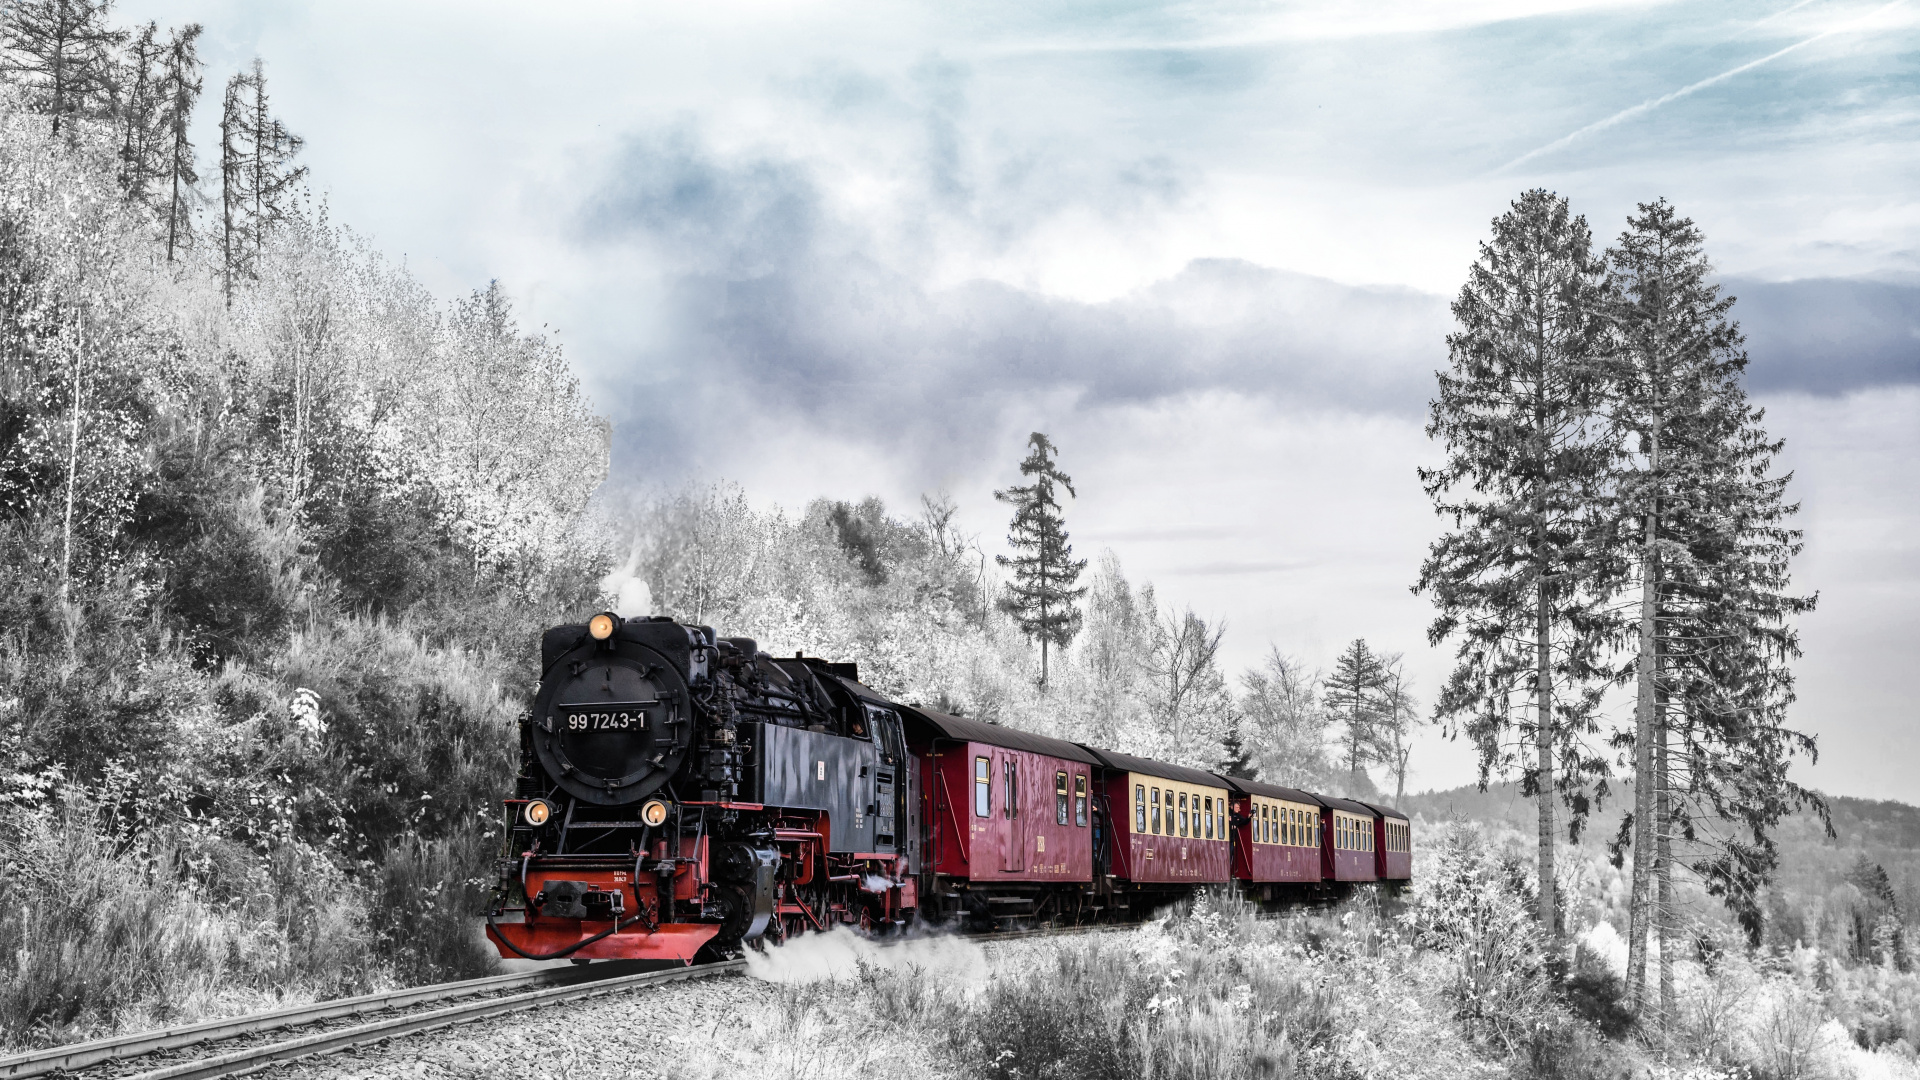 火车, 铁路运输, 蒸汽机车, 冬天, 是火车站 壁纸 1920x1080 允许